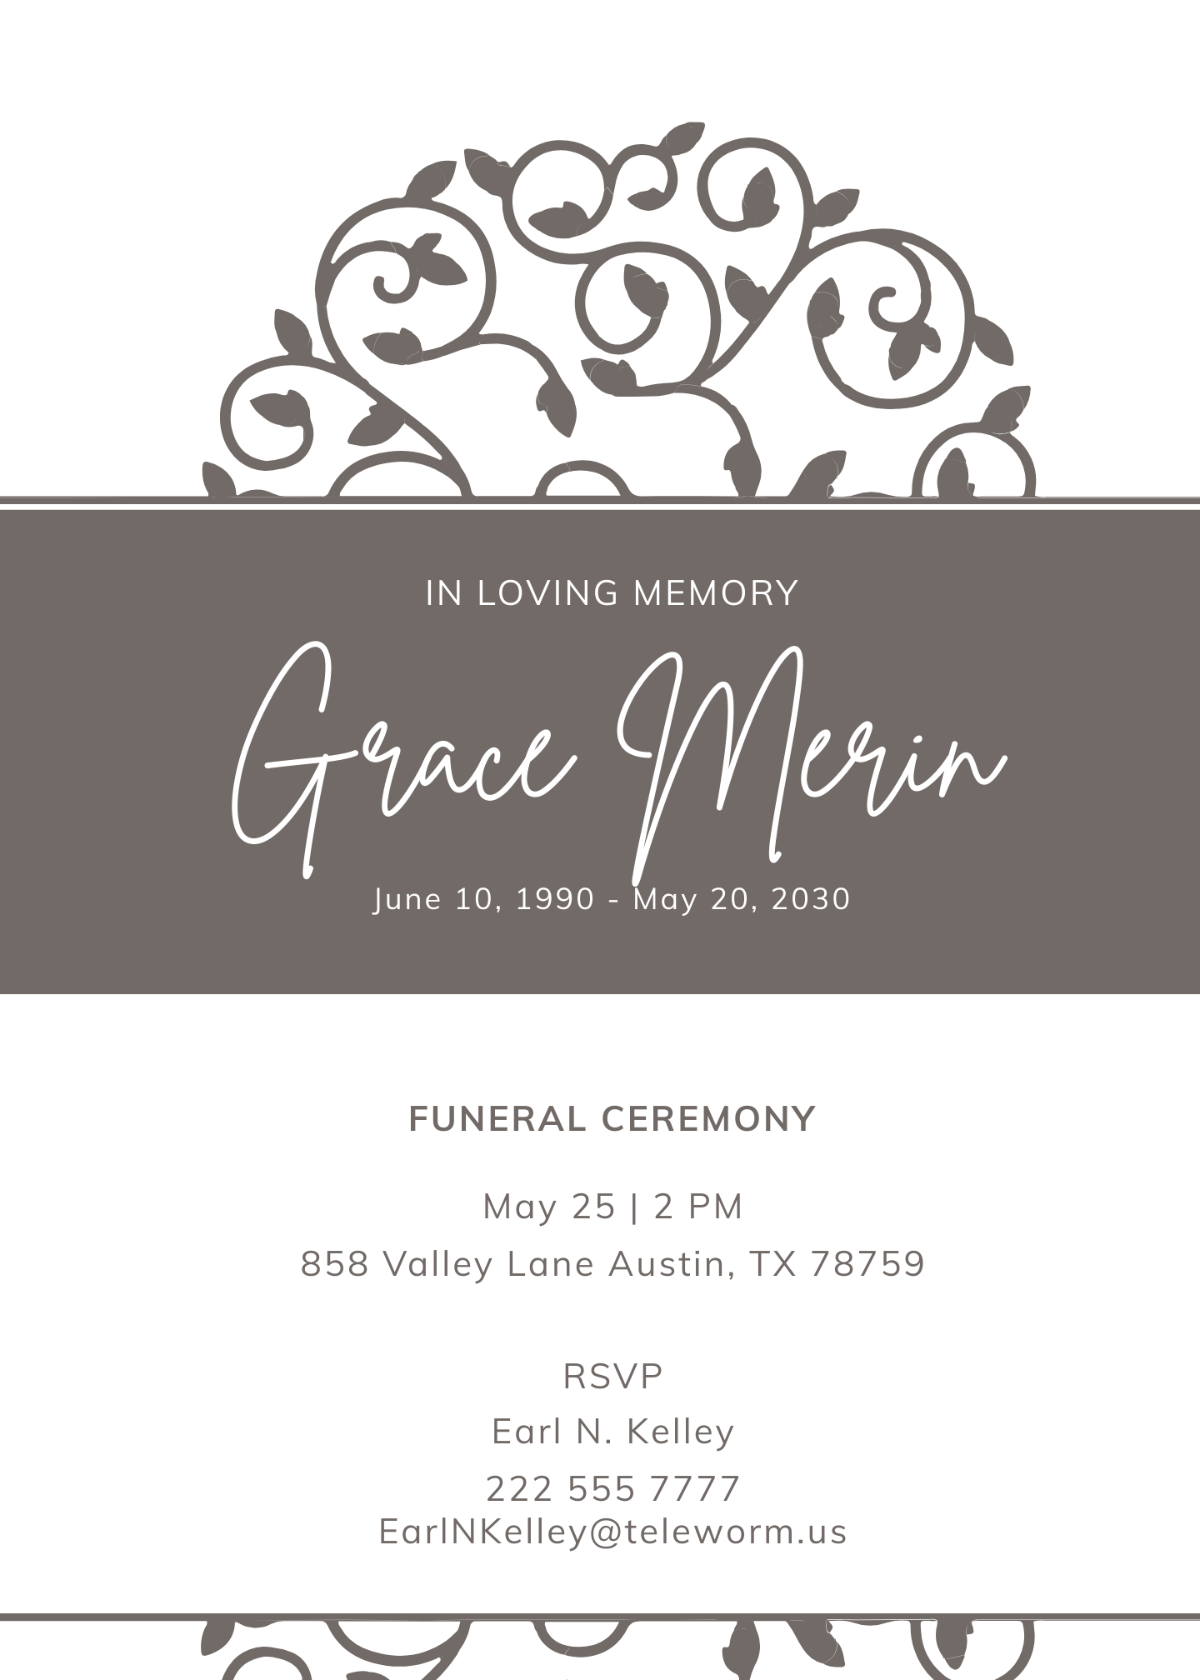 Creative Funeral Ceremony Invitation